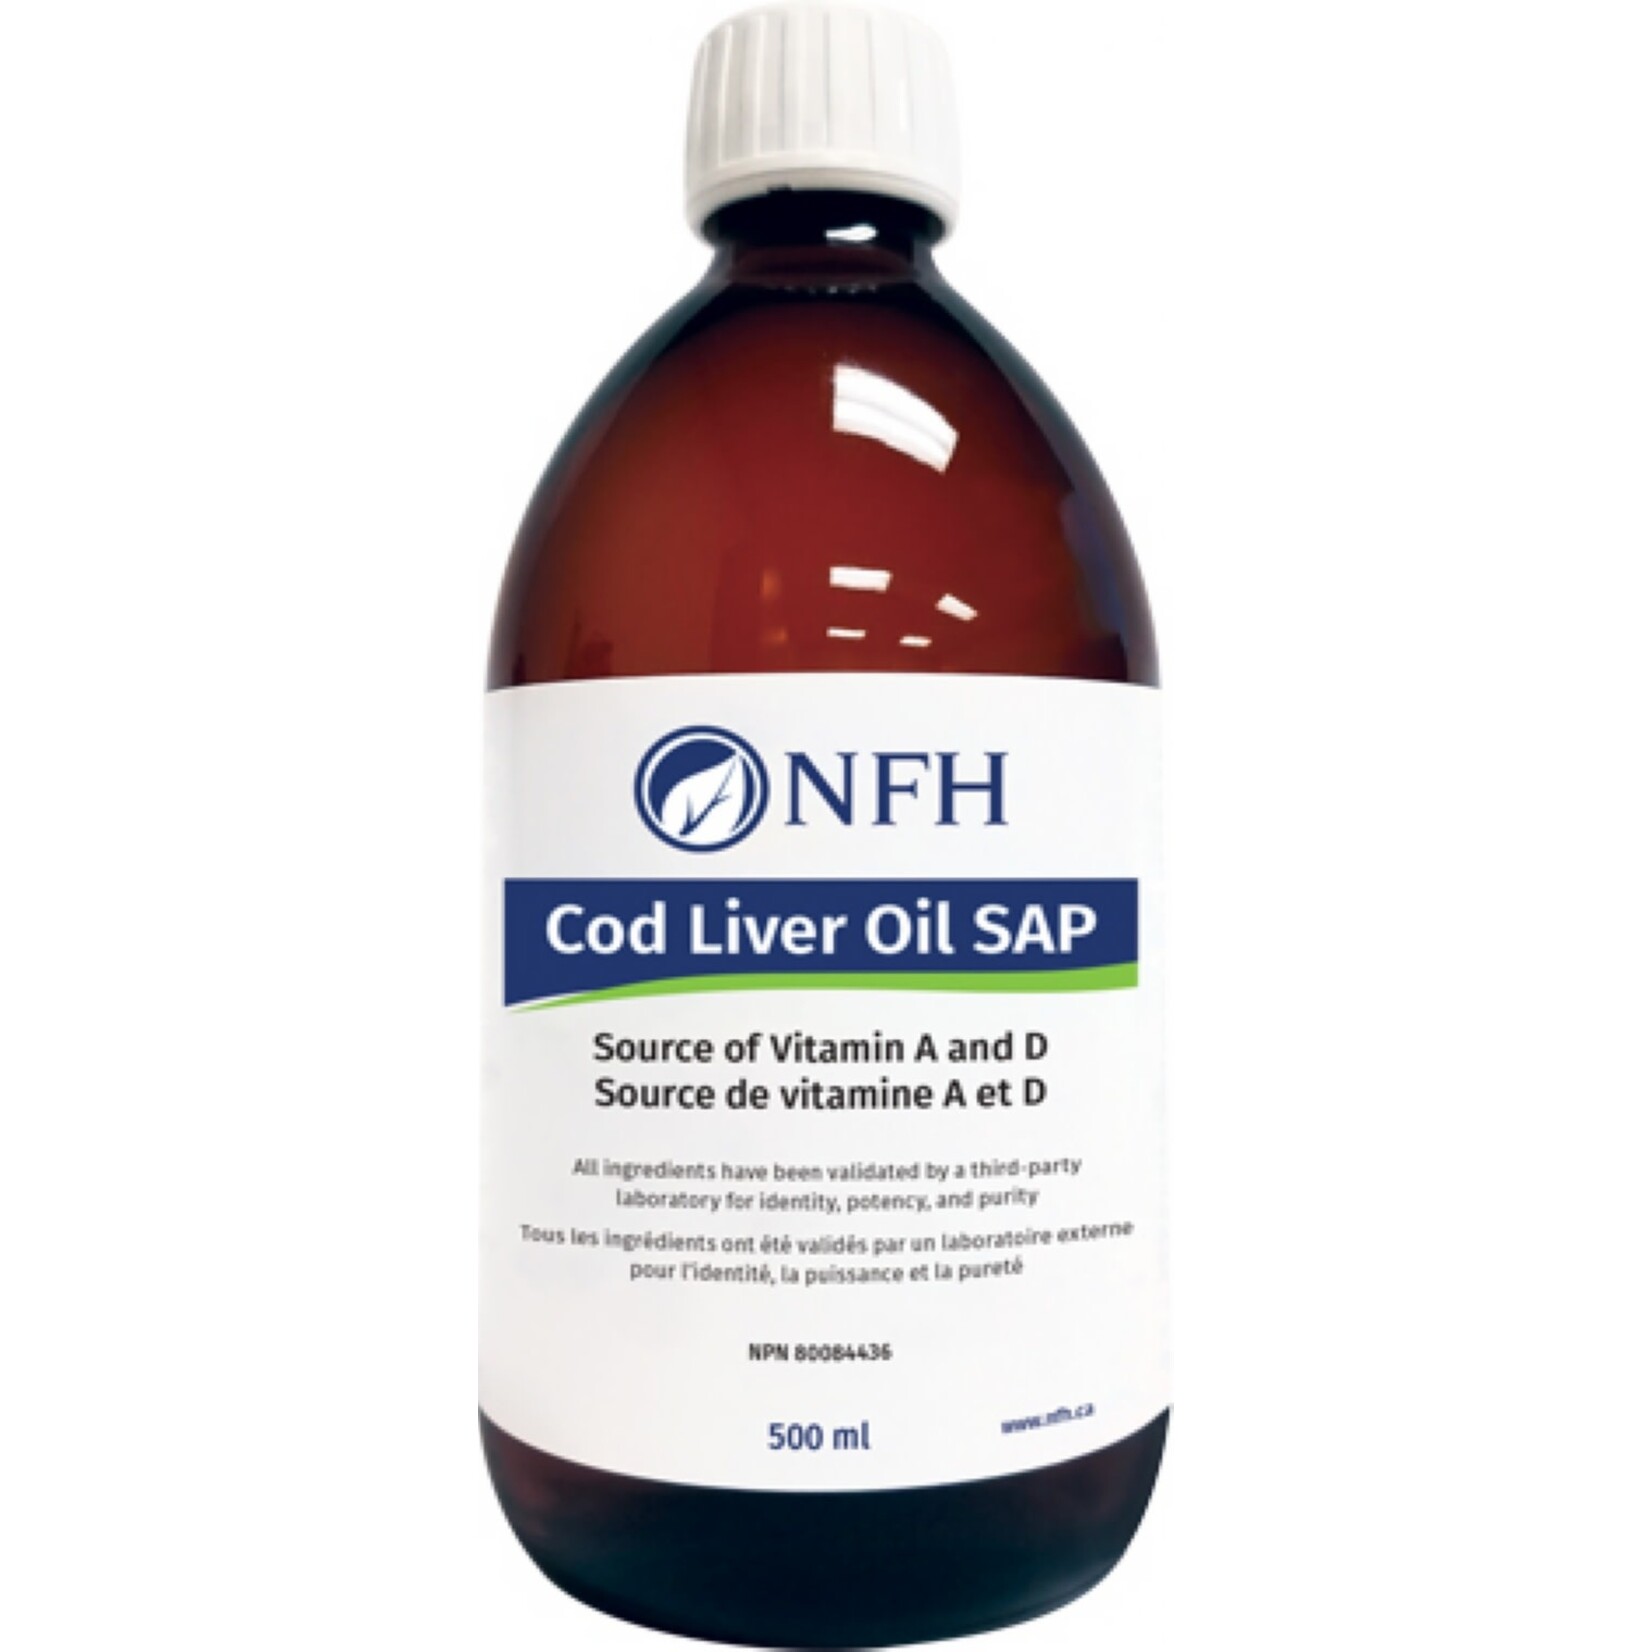 NFH NFH COD LIVER OIL SAP 500ML